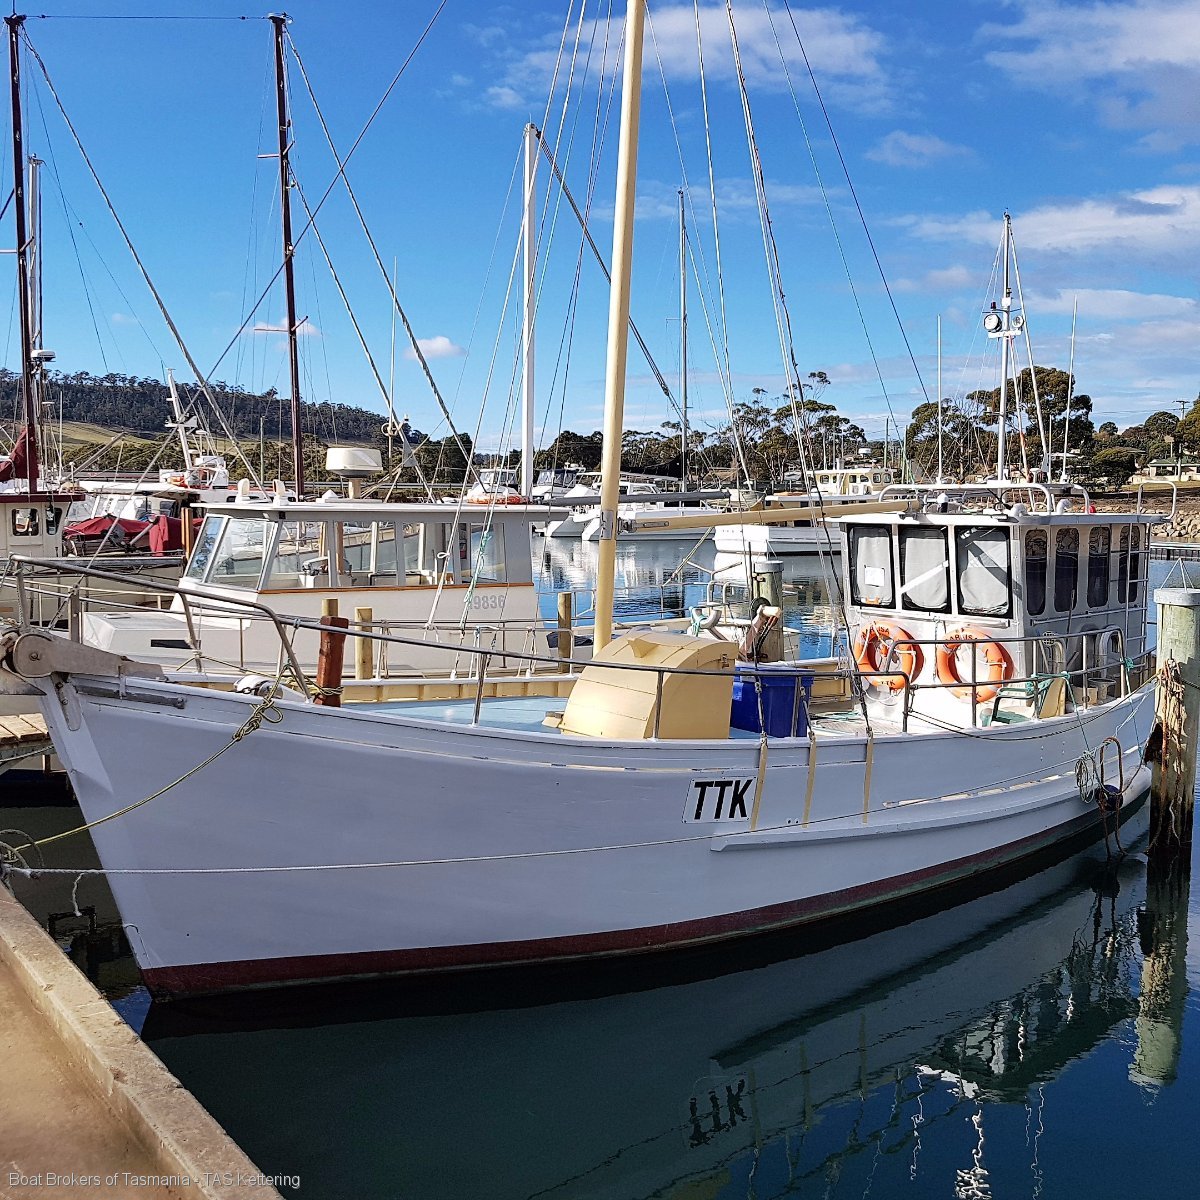 sailboat for sale tasmania